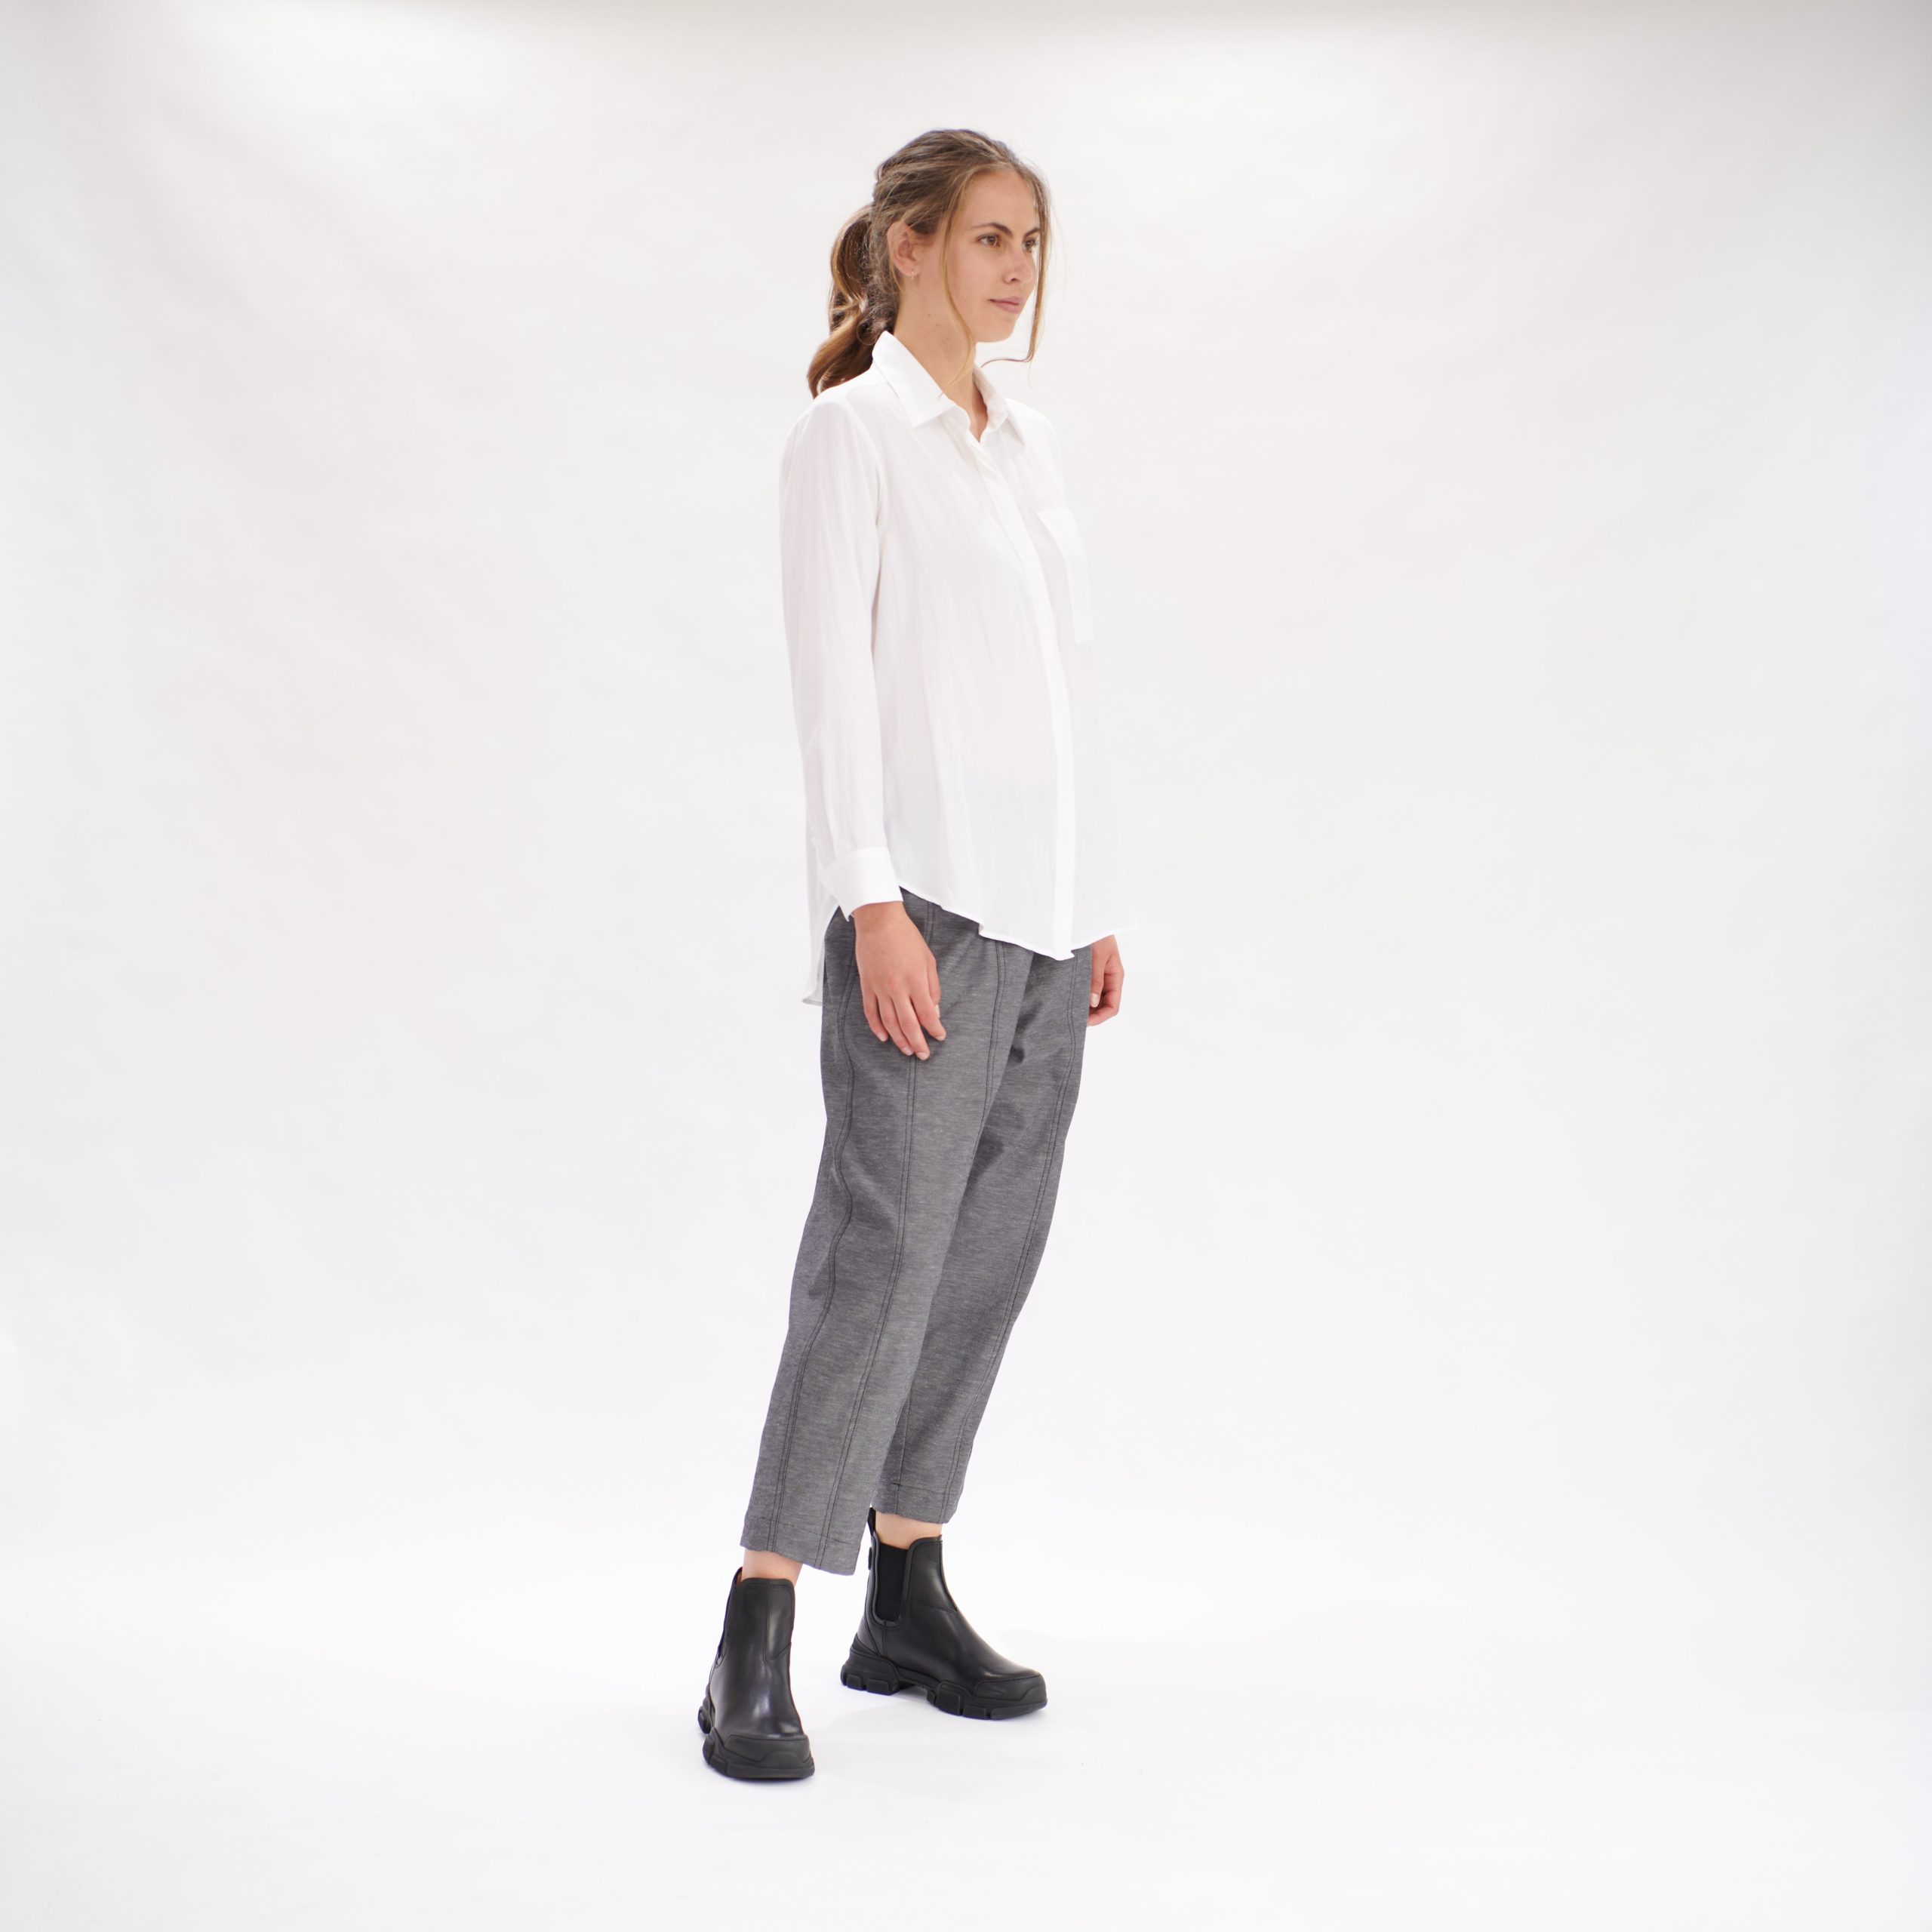 MELA PURDIE - F67 7741 Single Pocket Shirt | Frontline Designer Clothes ...